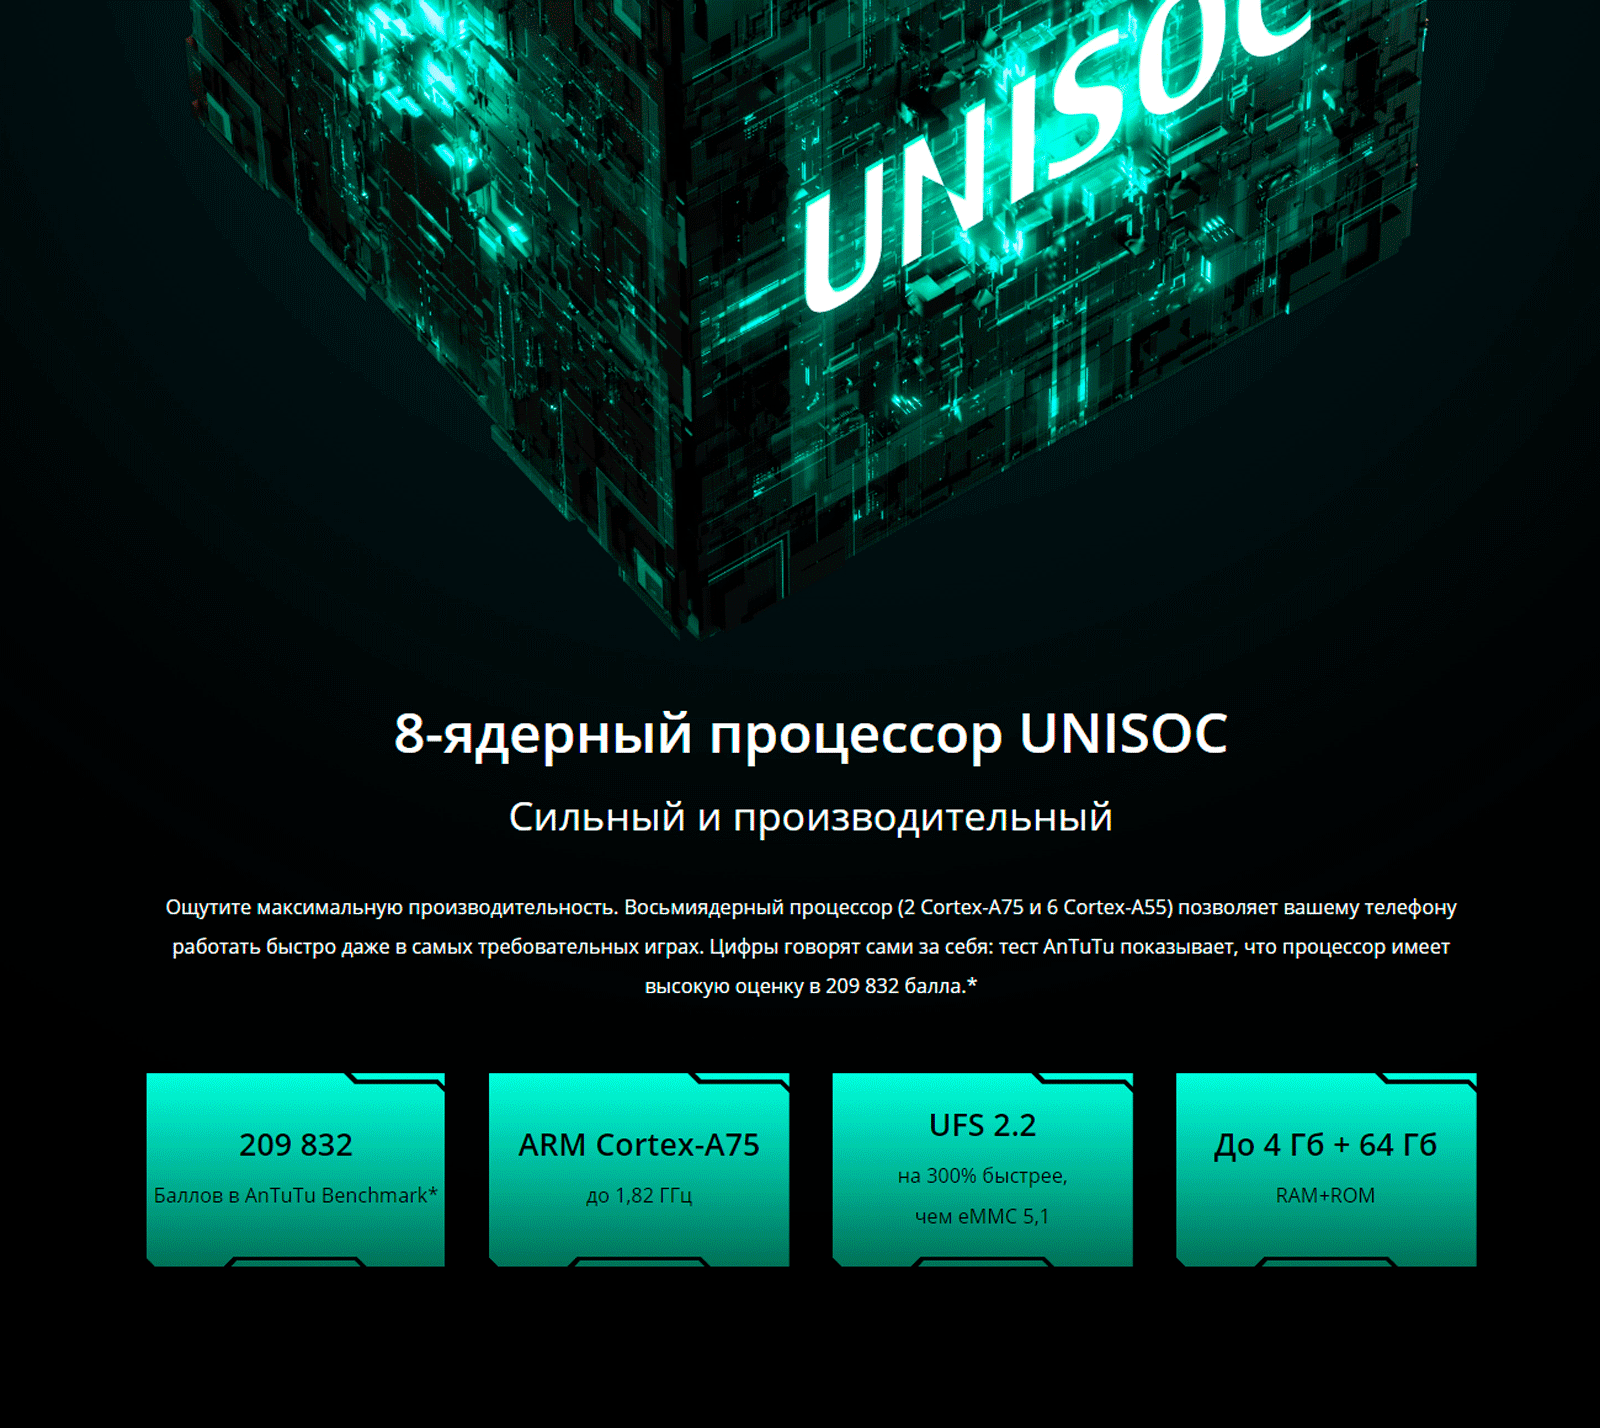 8-ядерный процессор UNISOC.